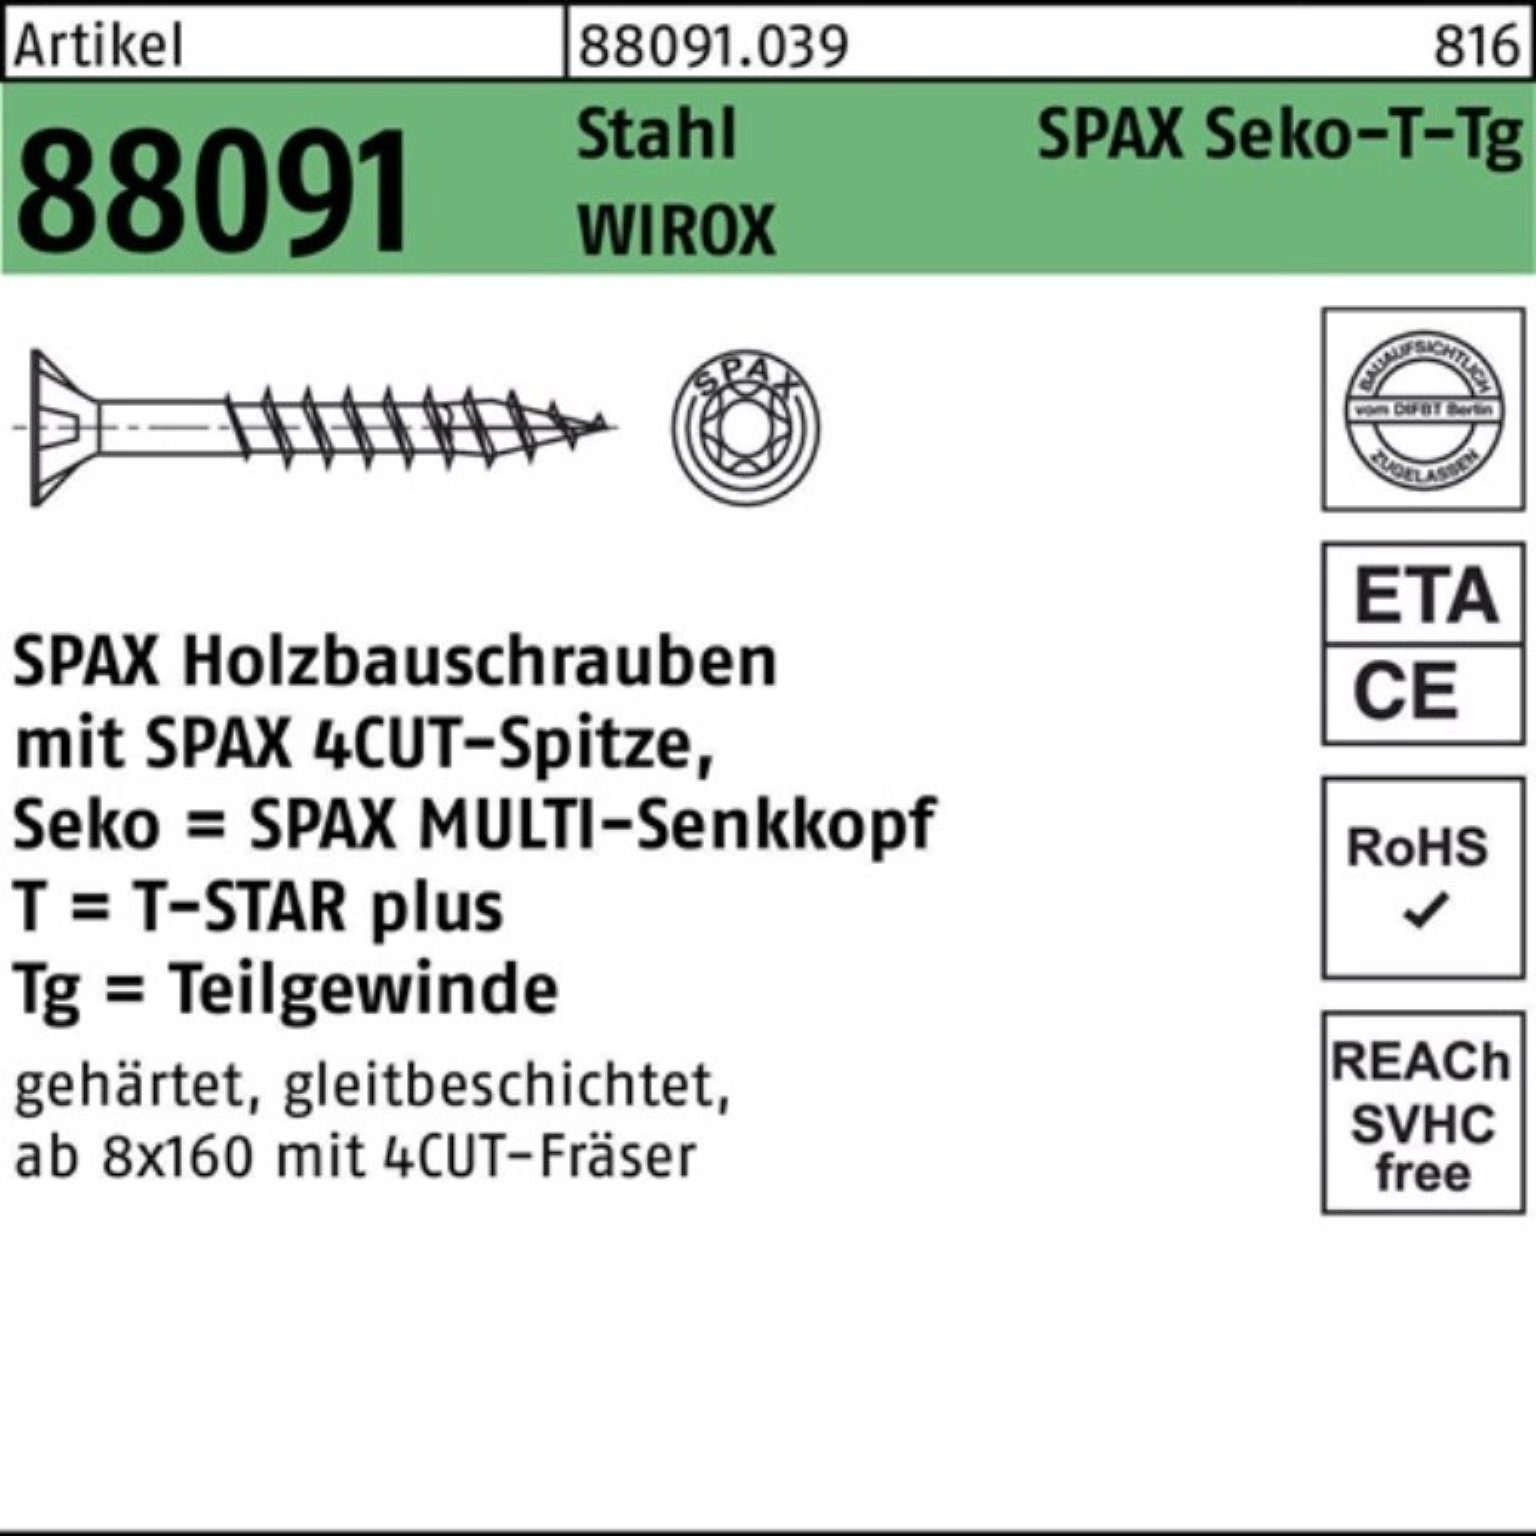 SPAX Schraube 100er Pack Schraube R 88091 SEKO/T-STAR TG 10x 100/60-T50 Stahl WIROX